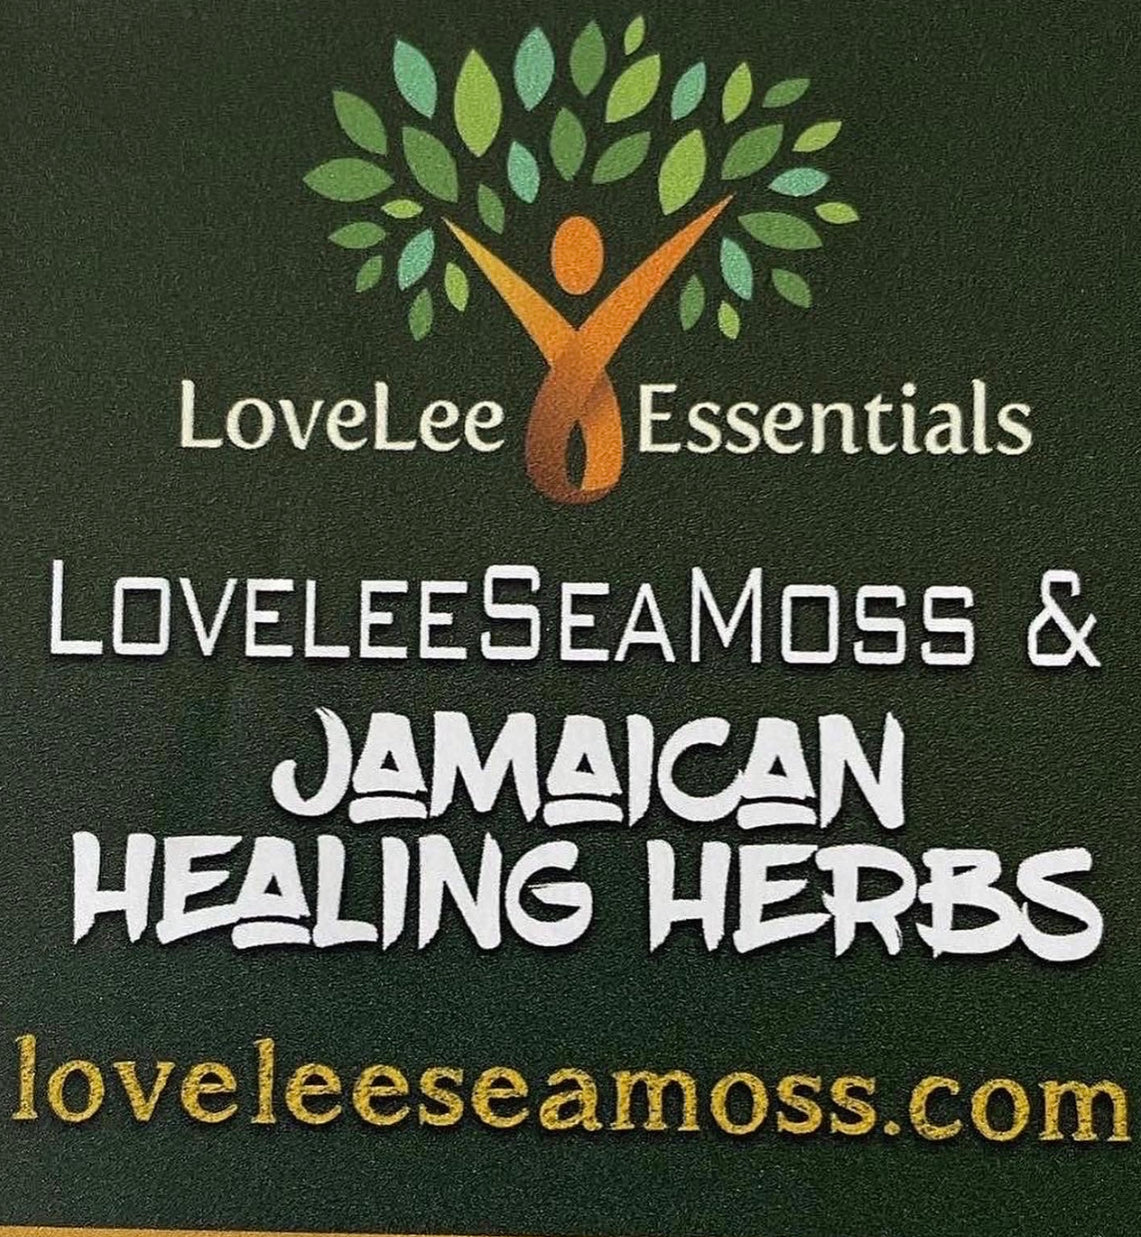 LoveLeeSeamoss & Jamaican healing herbs 